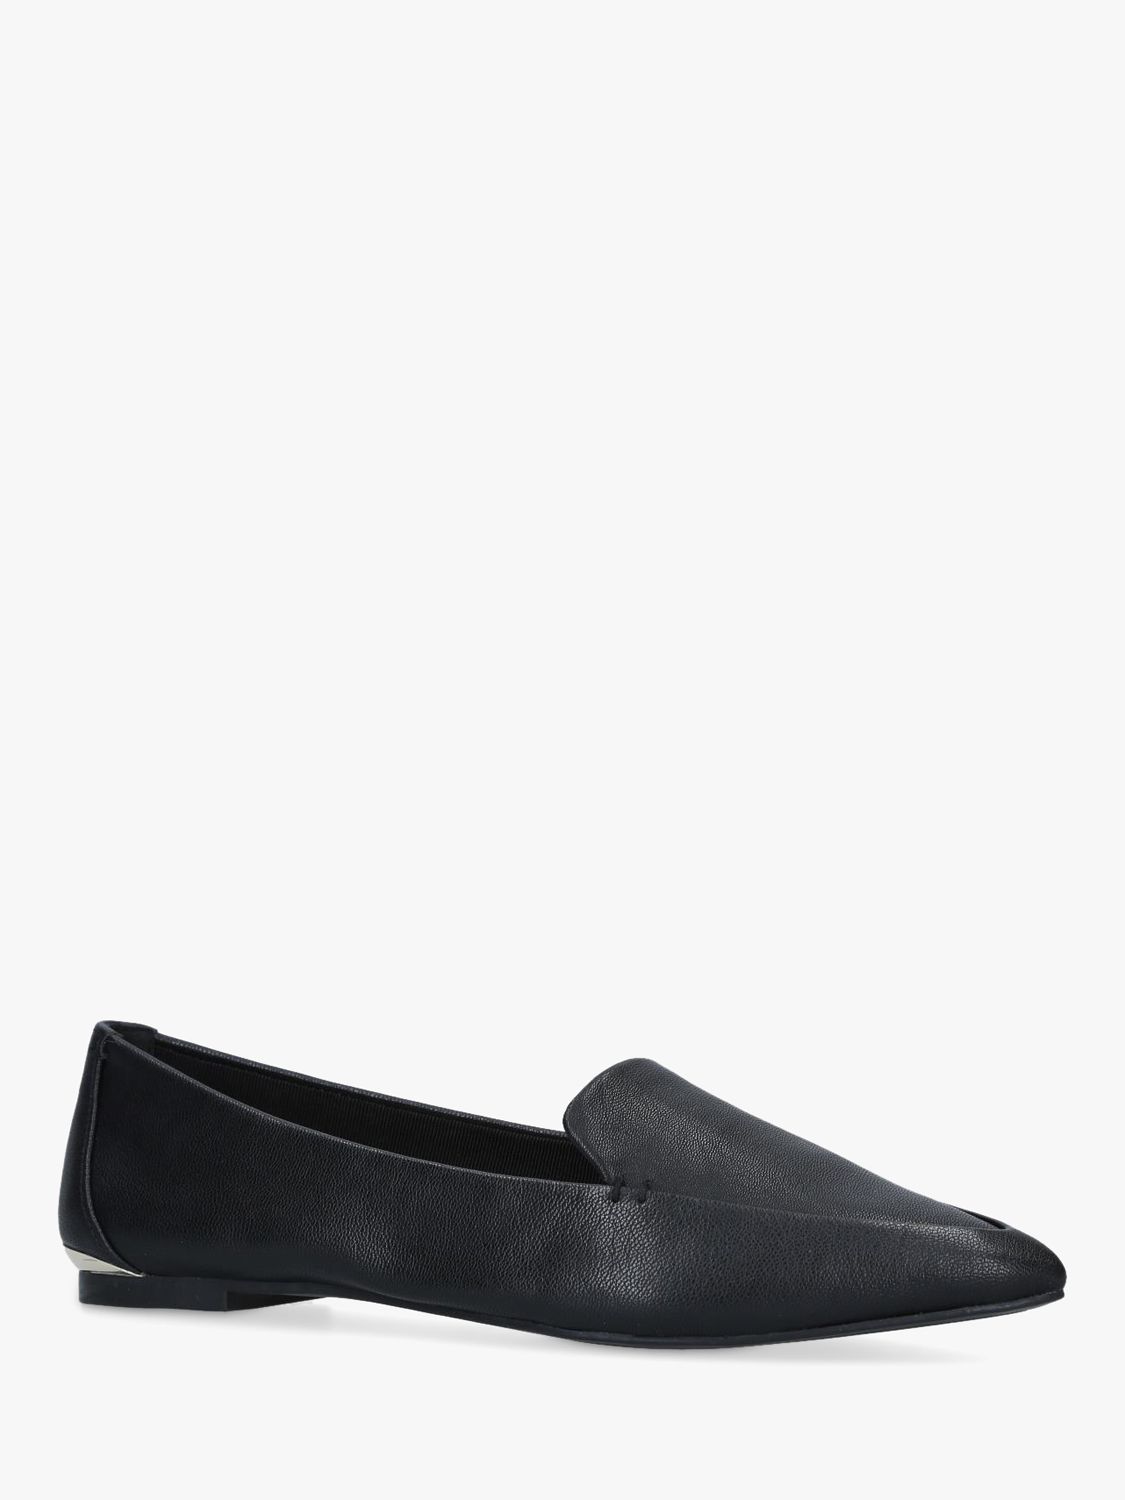 Carvela Land Leather Pointed Toe Ballet Shoes, Black at John Lewis ...